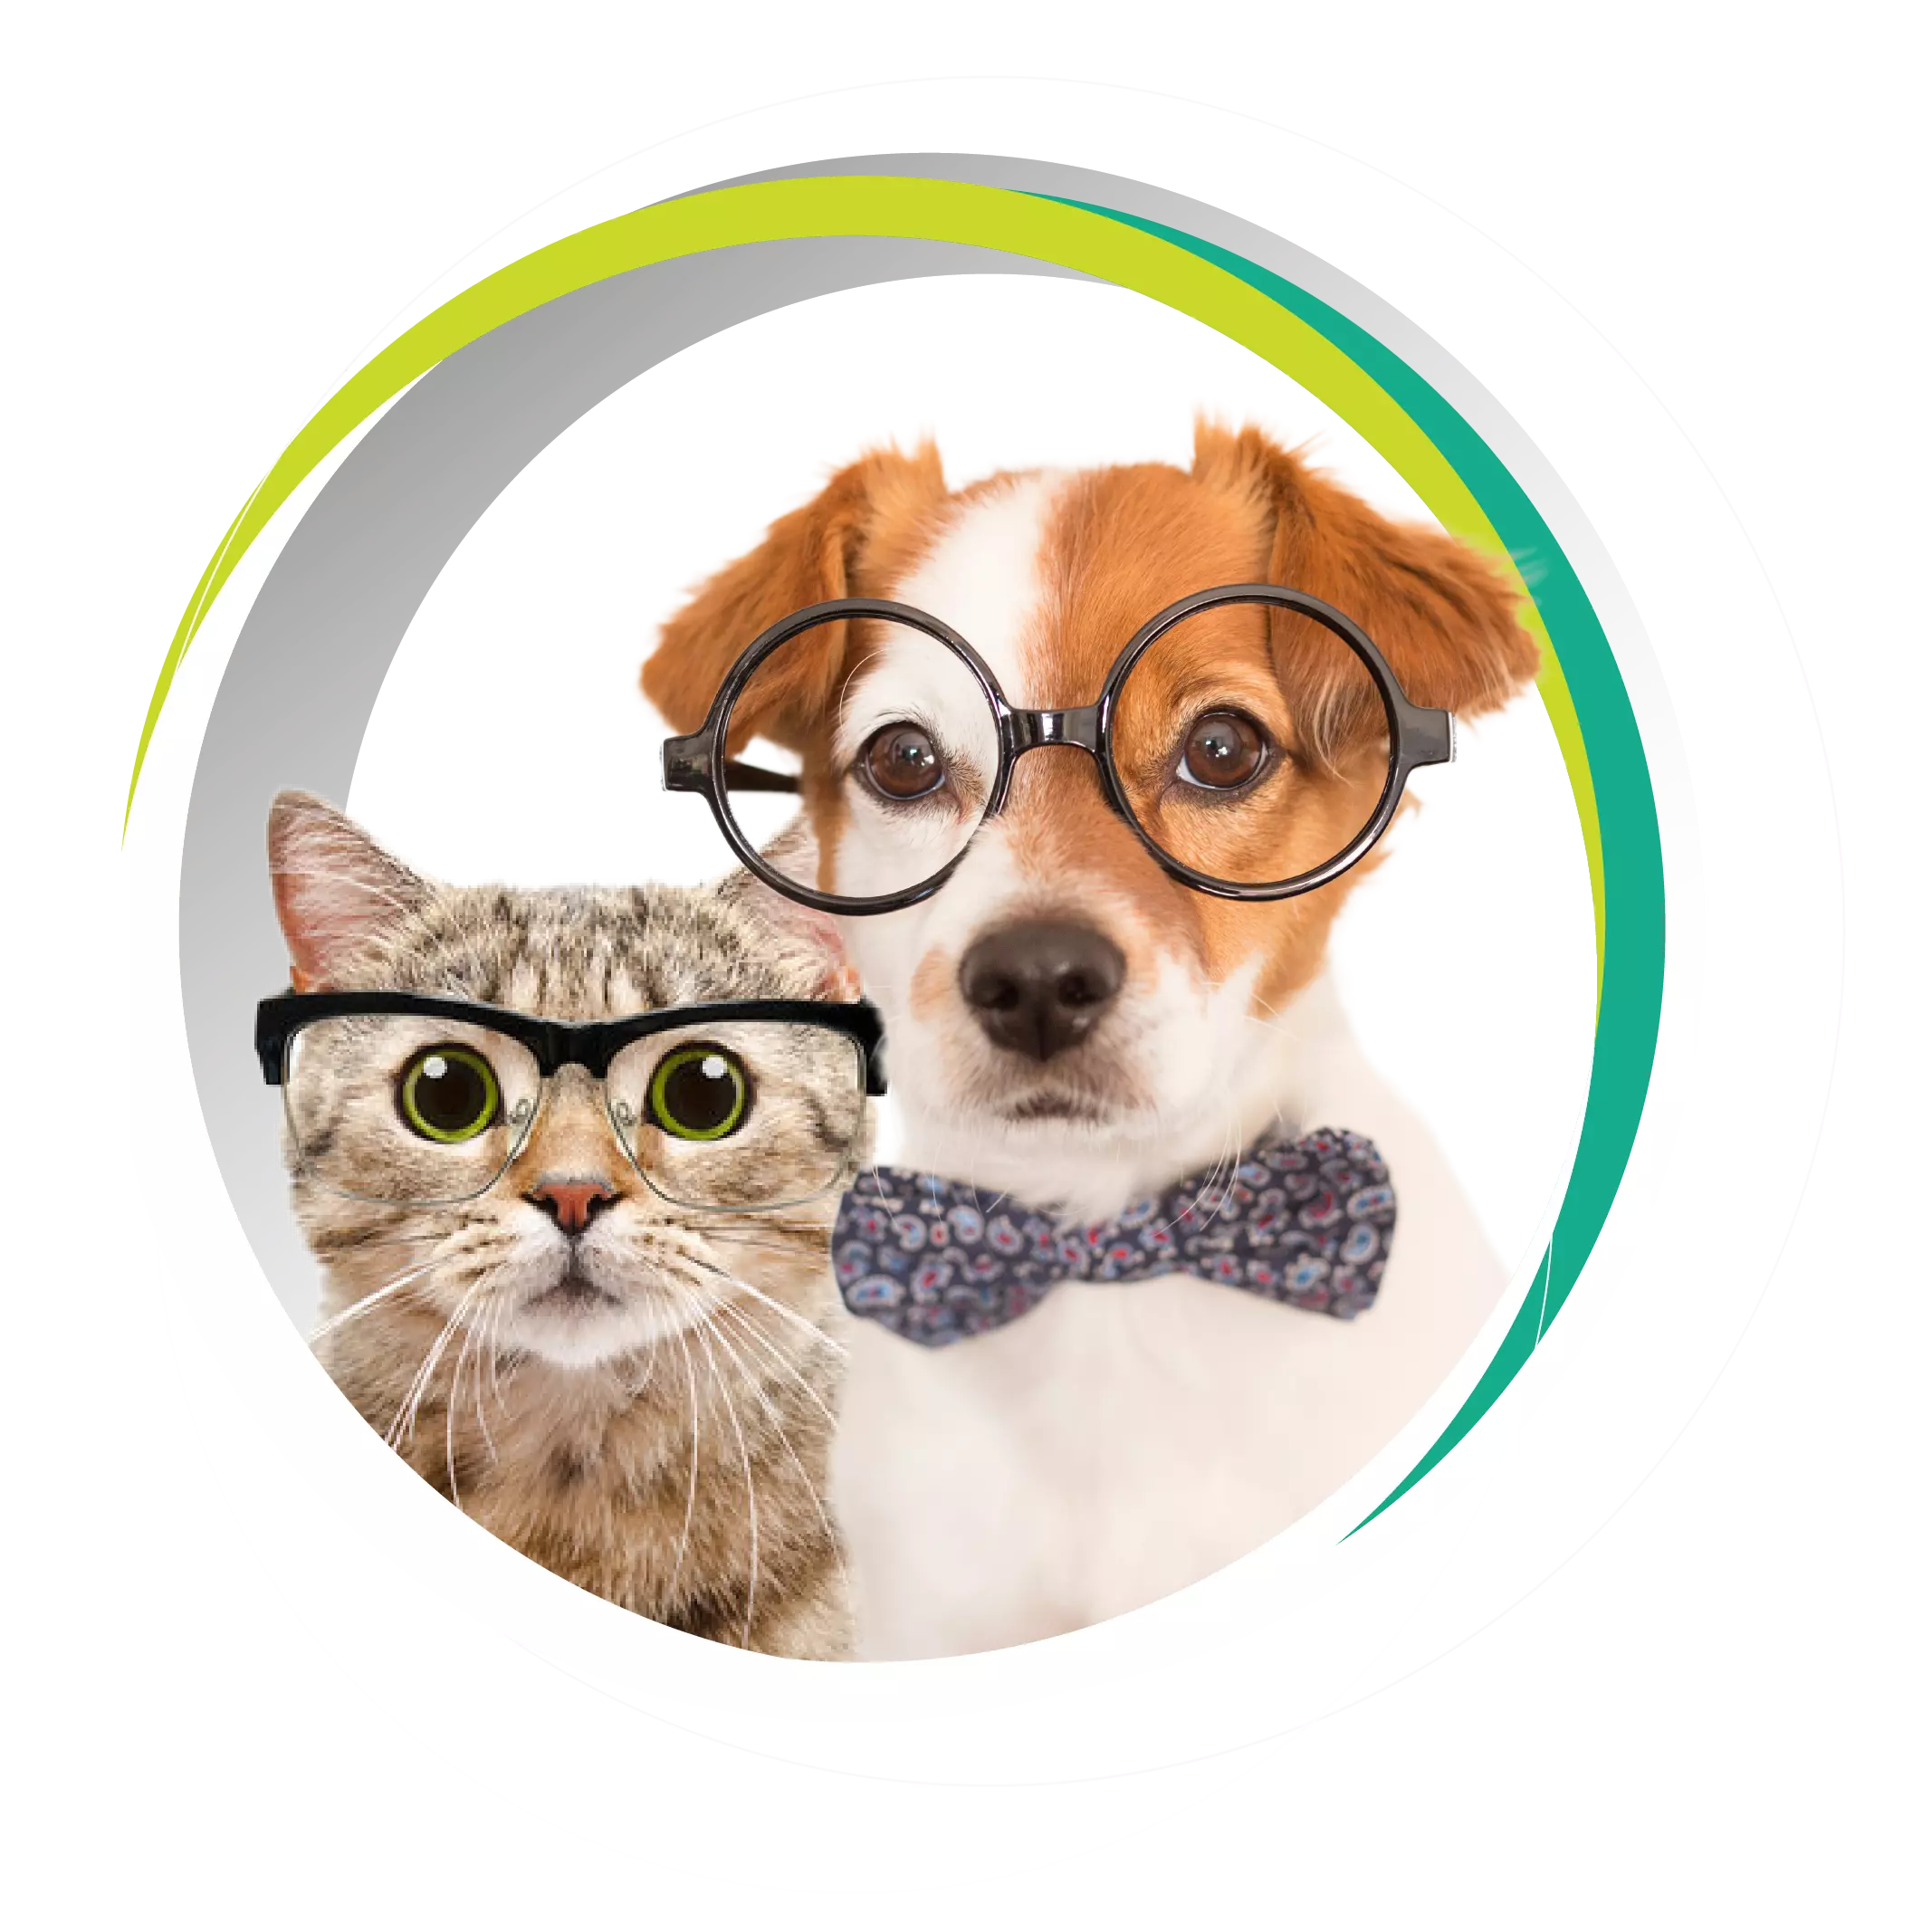 imagem ilustrativa de um gato e um cachorro usando óculos.